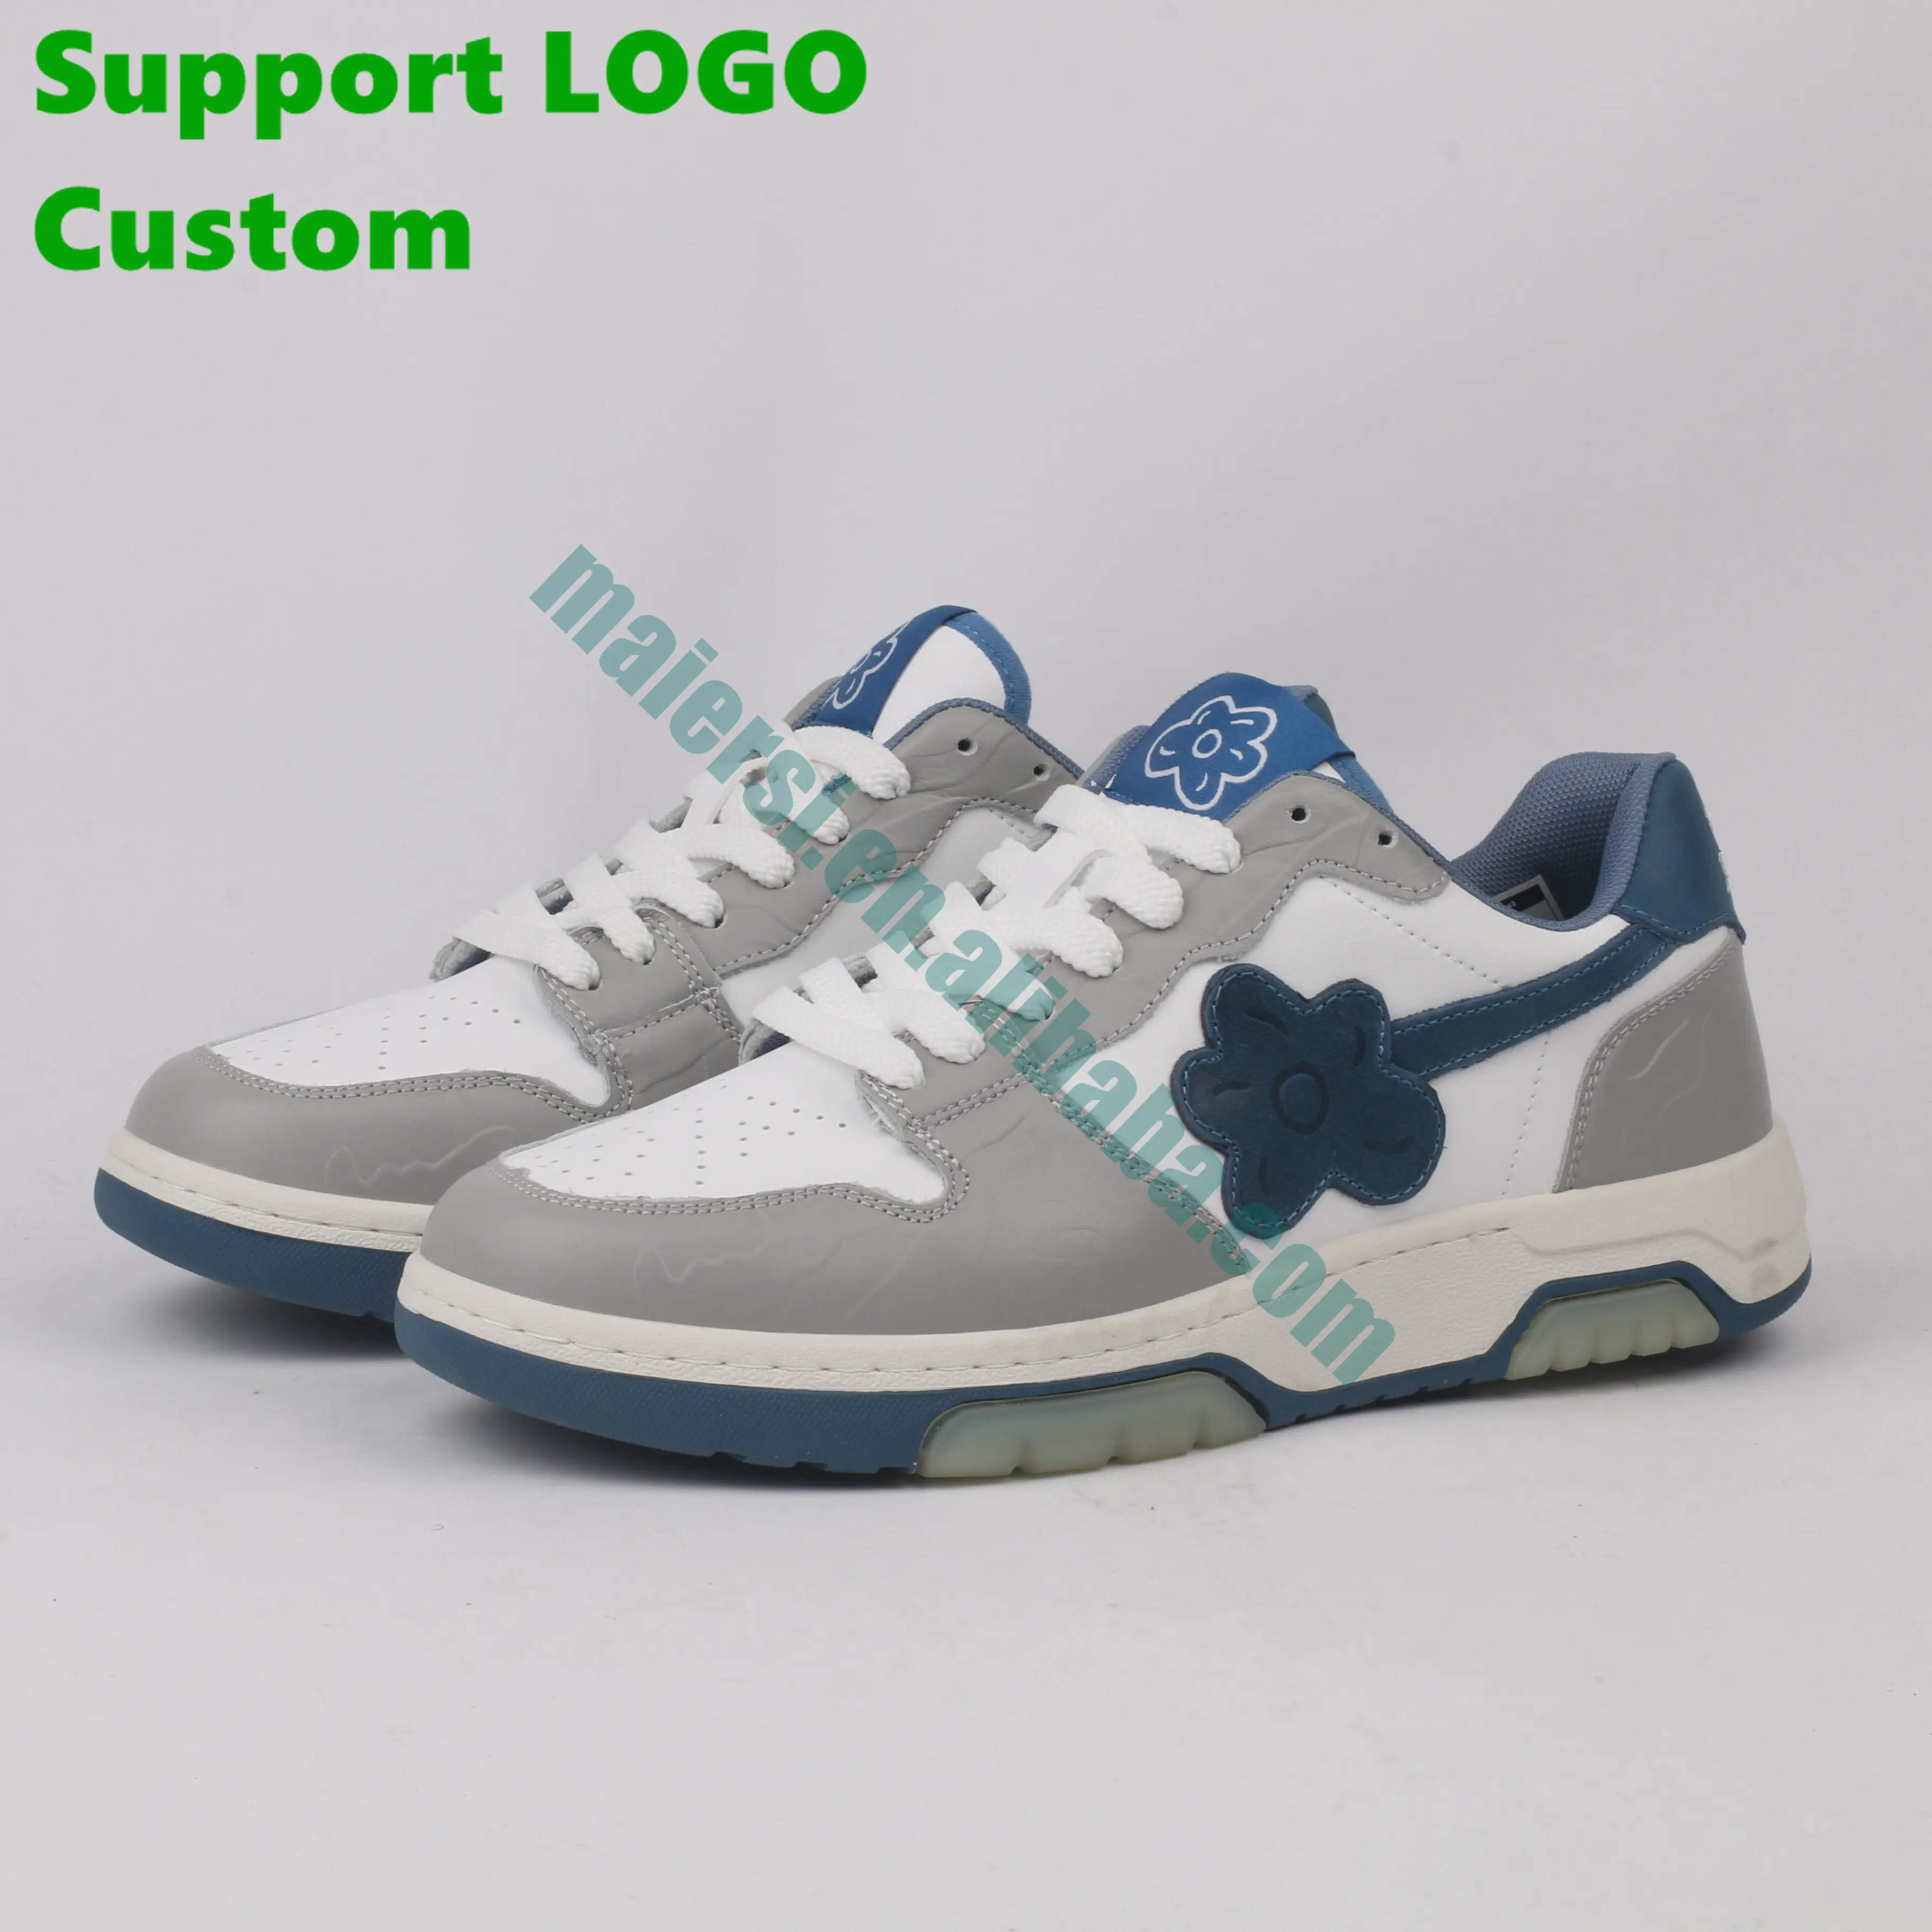 Wholesale High Quality Sb Dunks Retro Og Brand Custom Sport Basketball Shoes Sneakers For Men Women